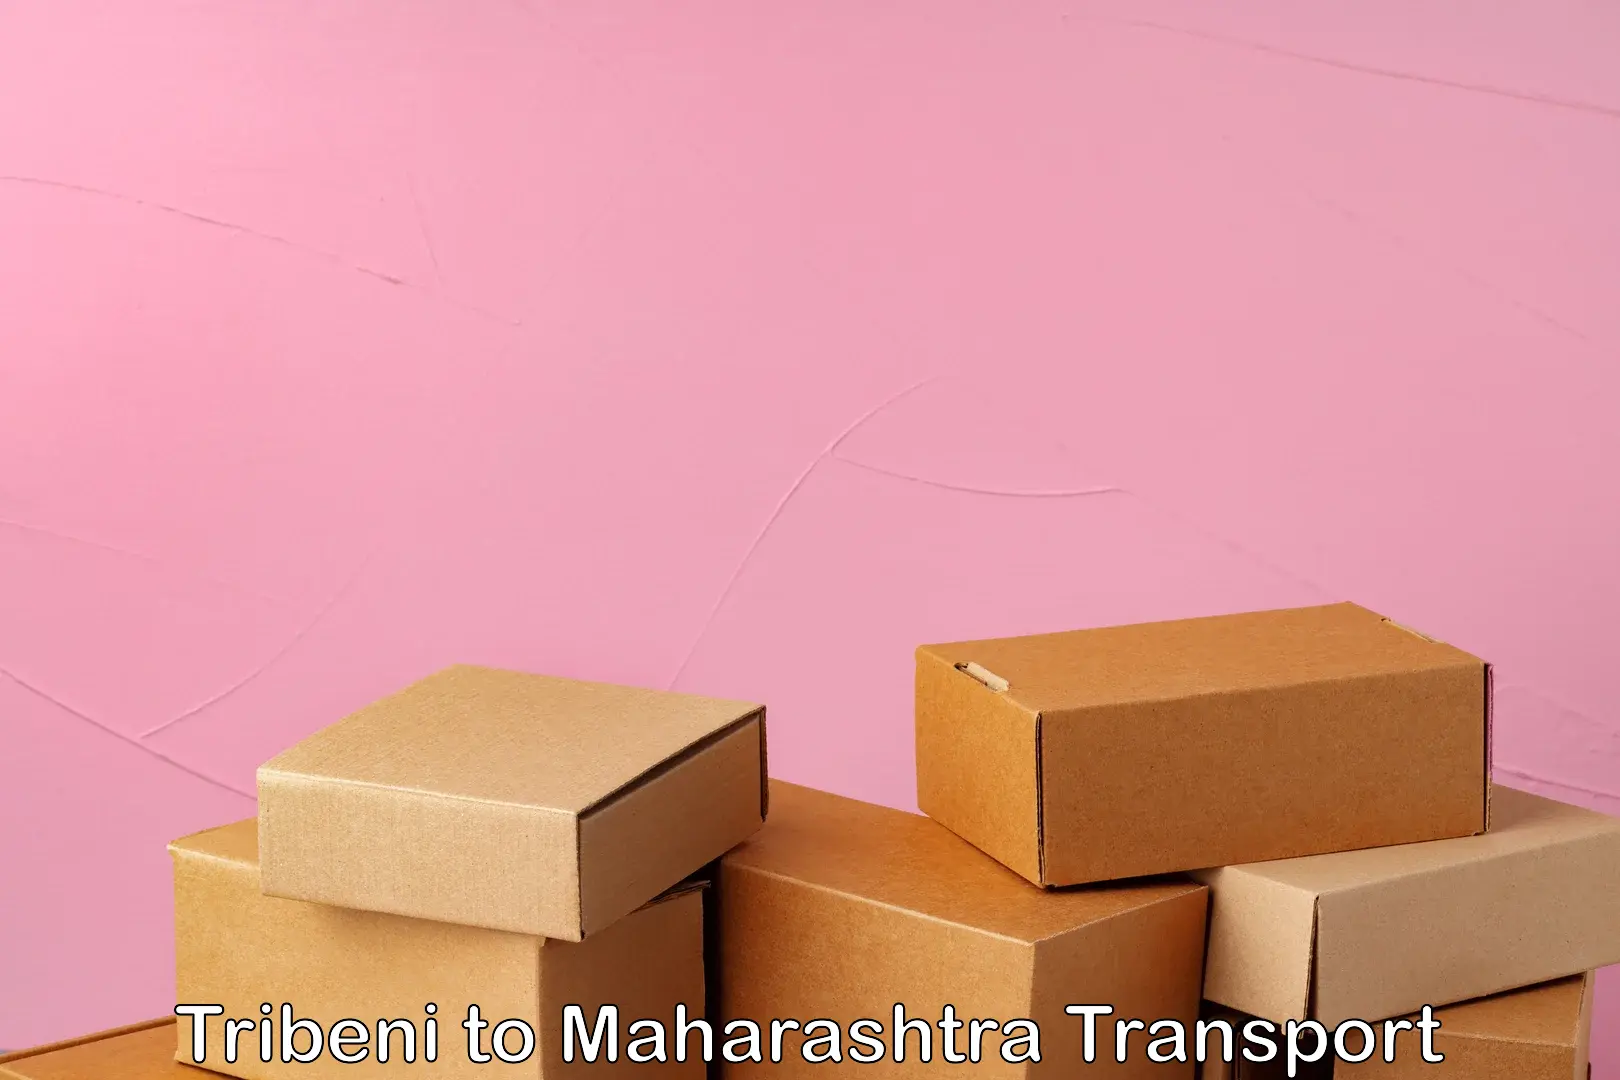 Bike transport service Tribeni to Maharashtra